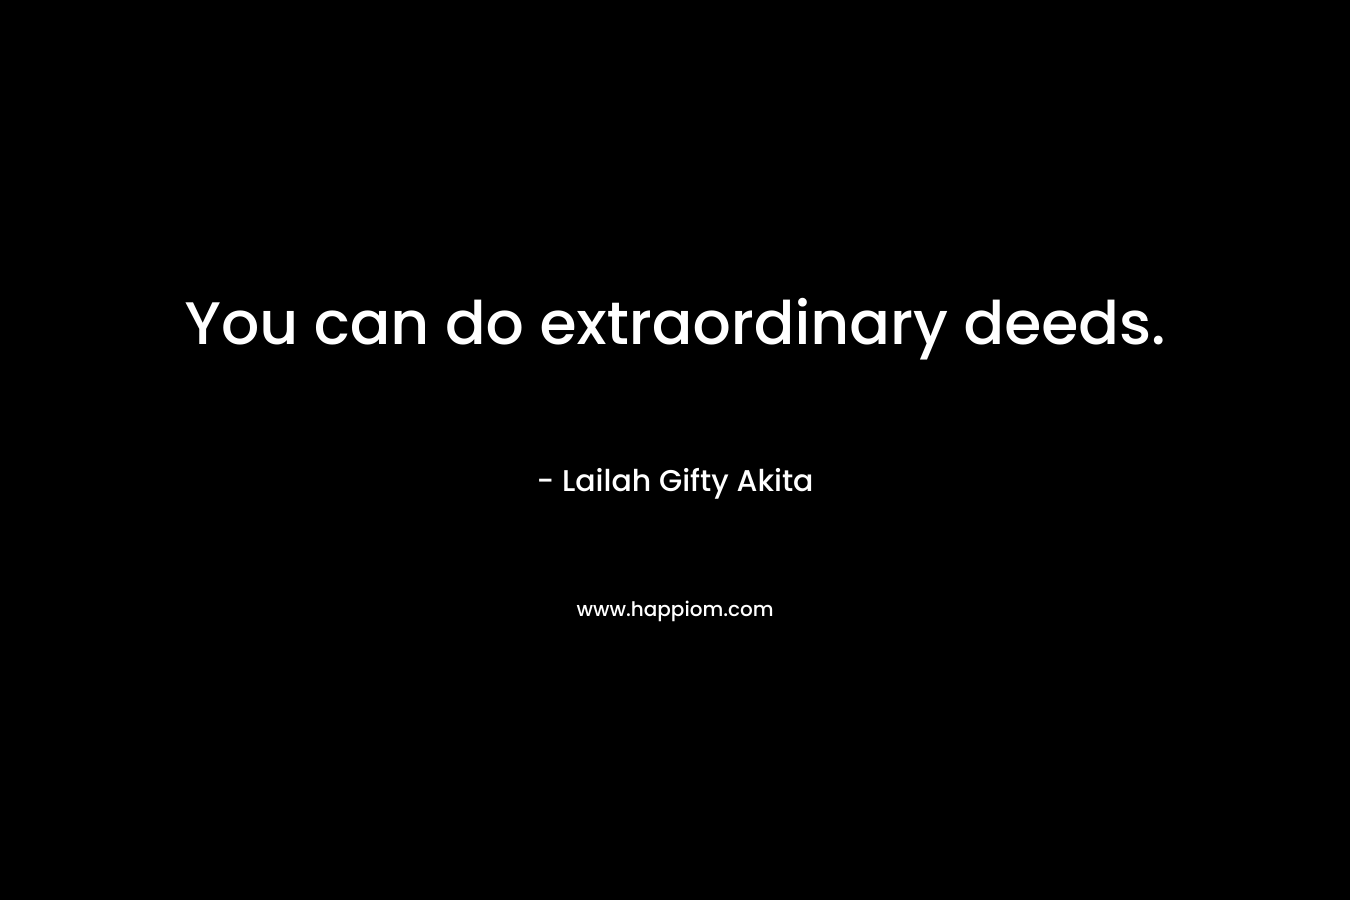 You can do extraordinary deeds.